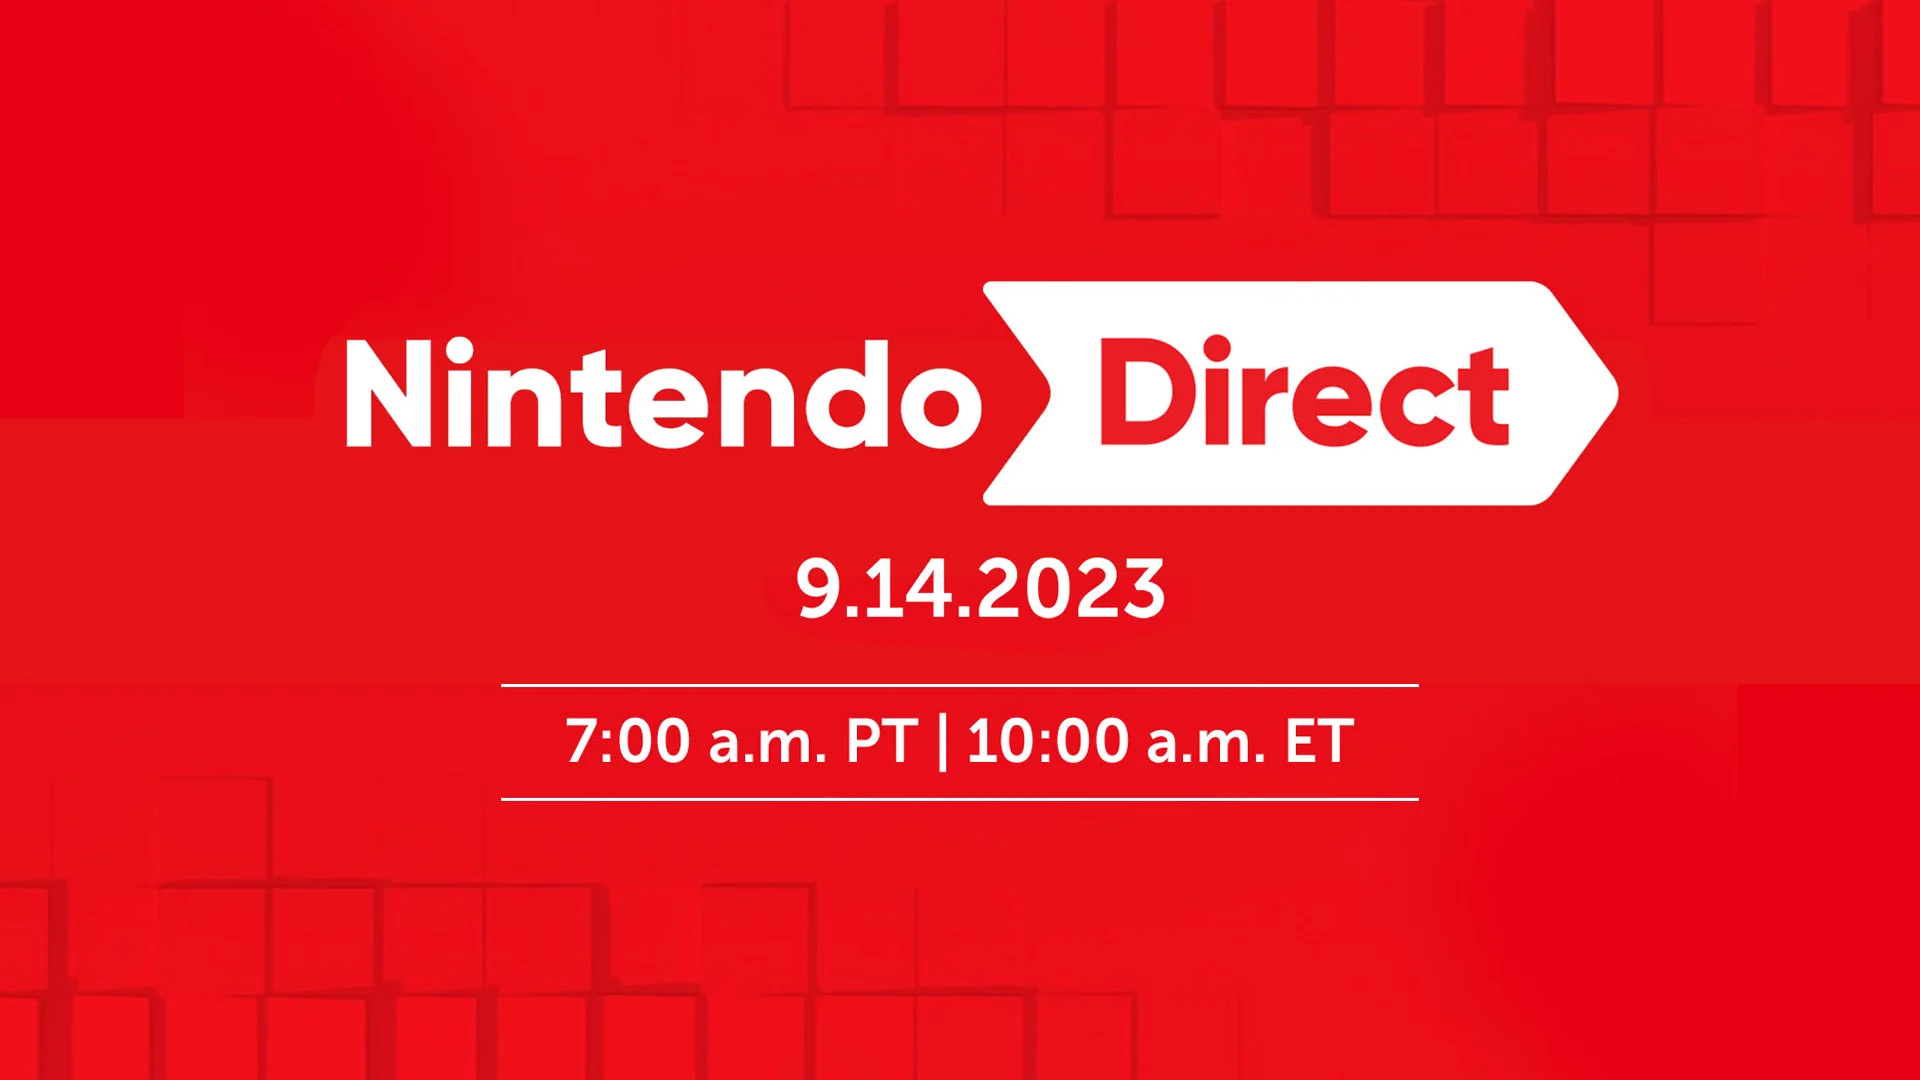 Nintendo поделилась подробностями новой трансляции Direct - фото 1